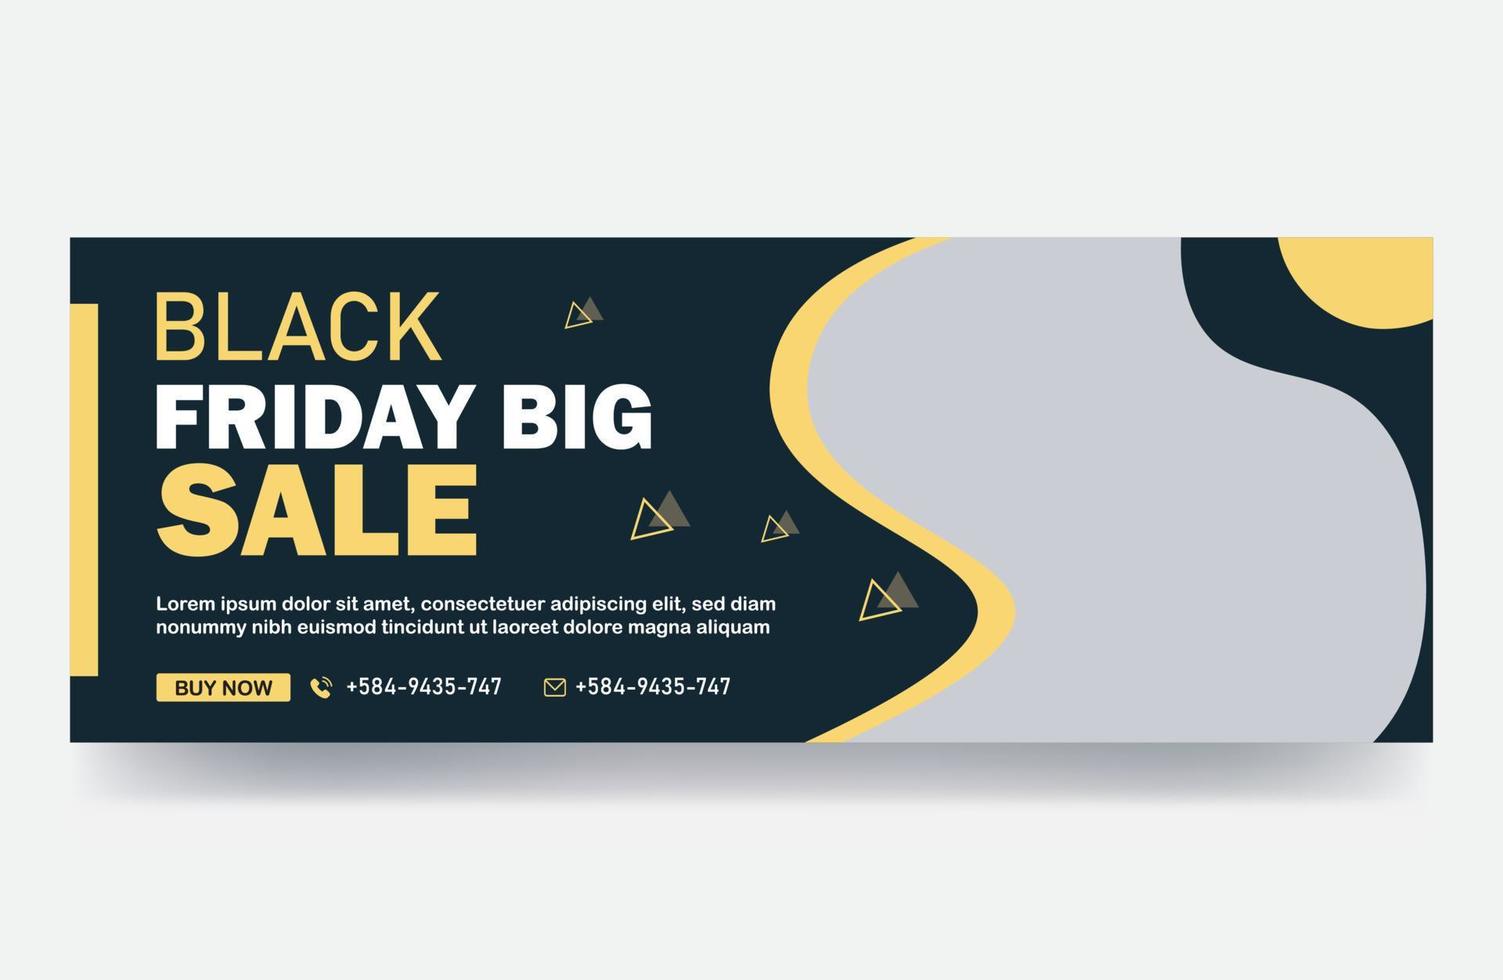 Black Friday big sale timeline cover weekend sale social media banner design template poster vector